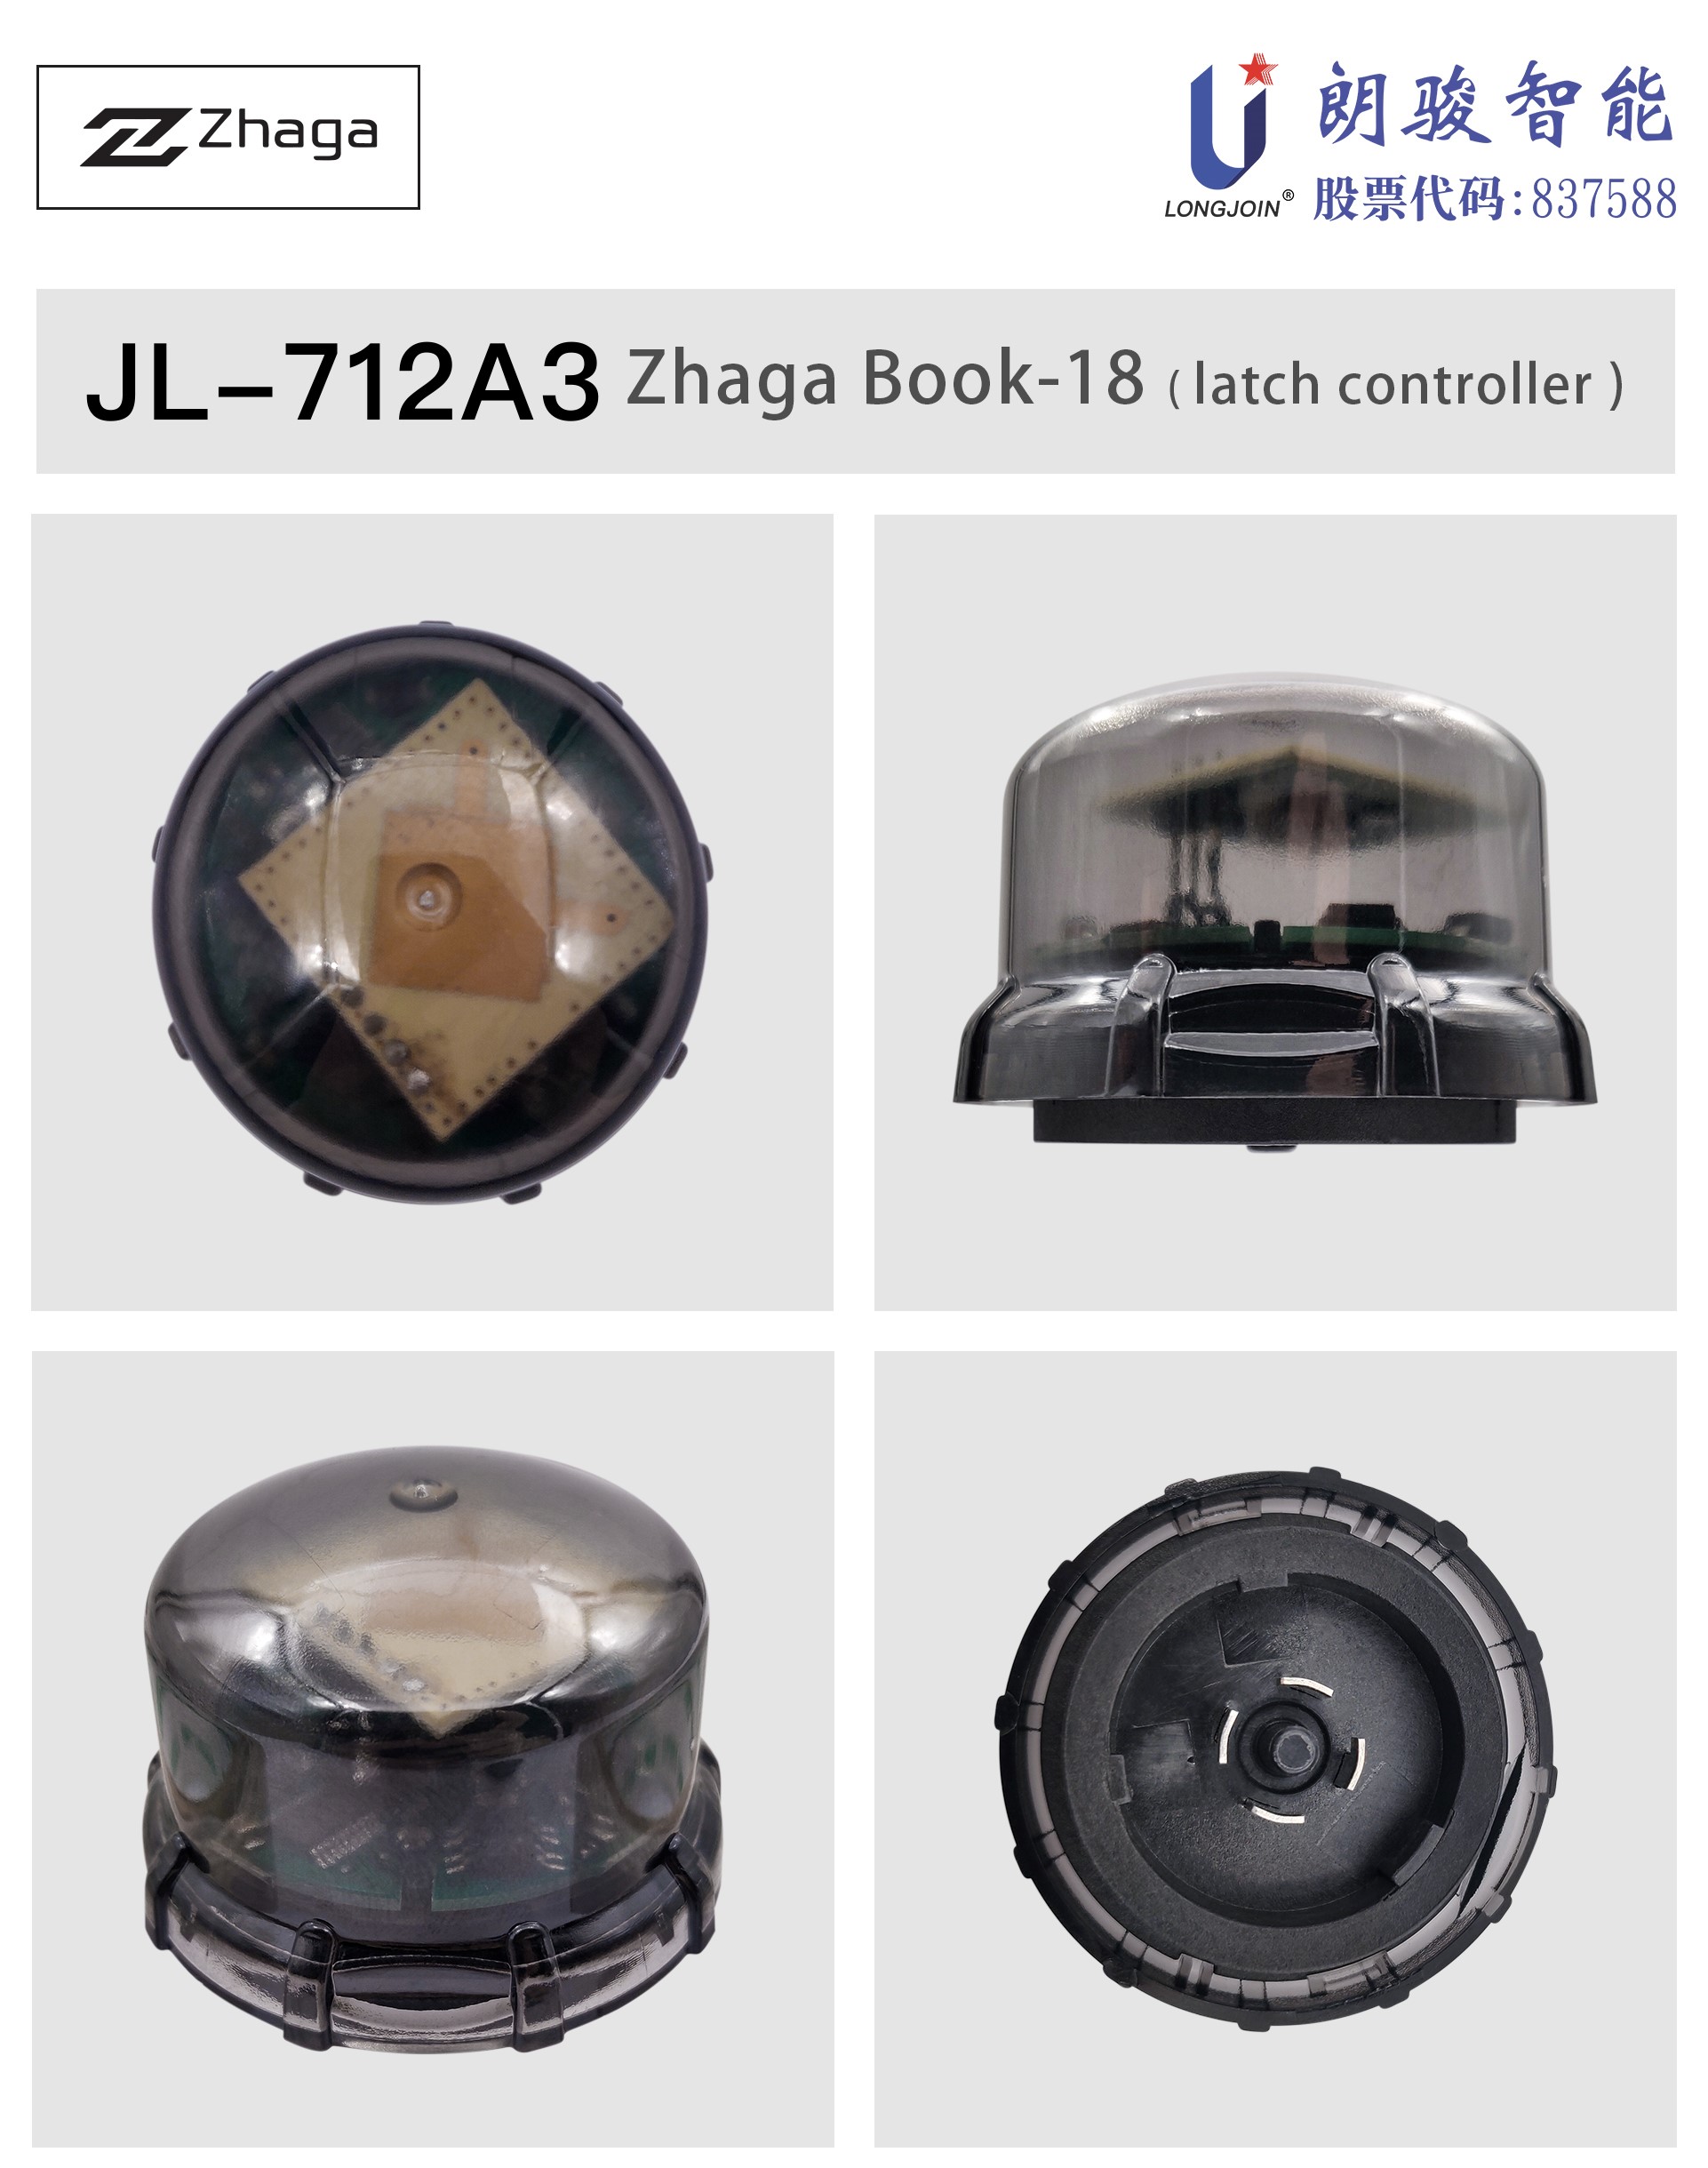 英文版1-JL-712A3-产品图片.jpg